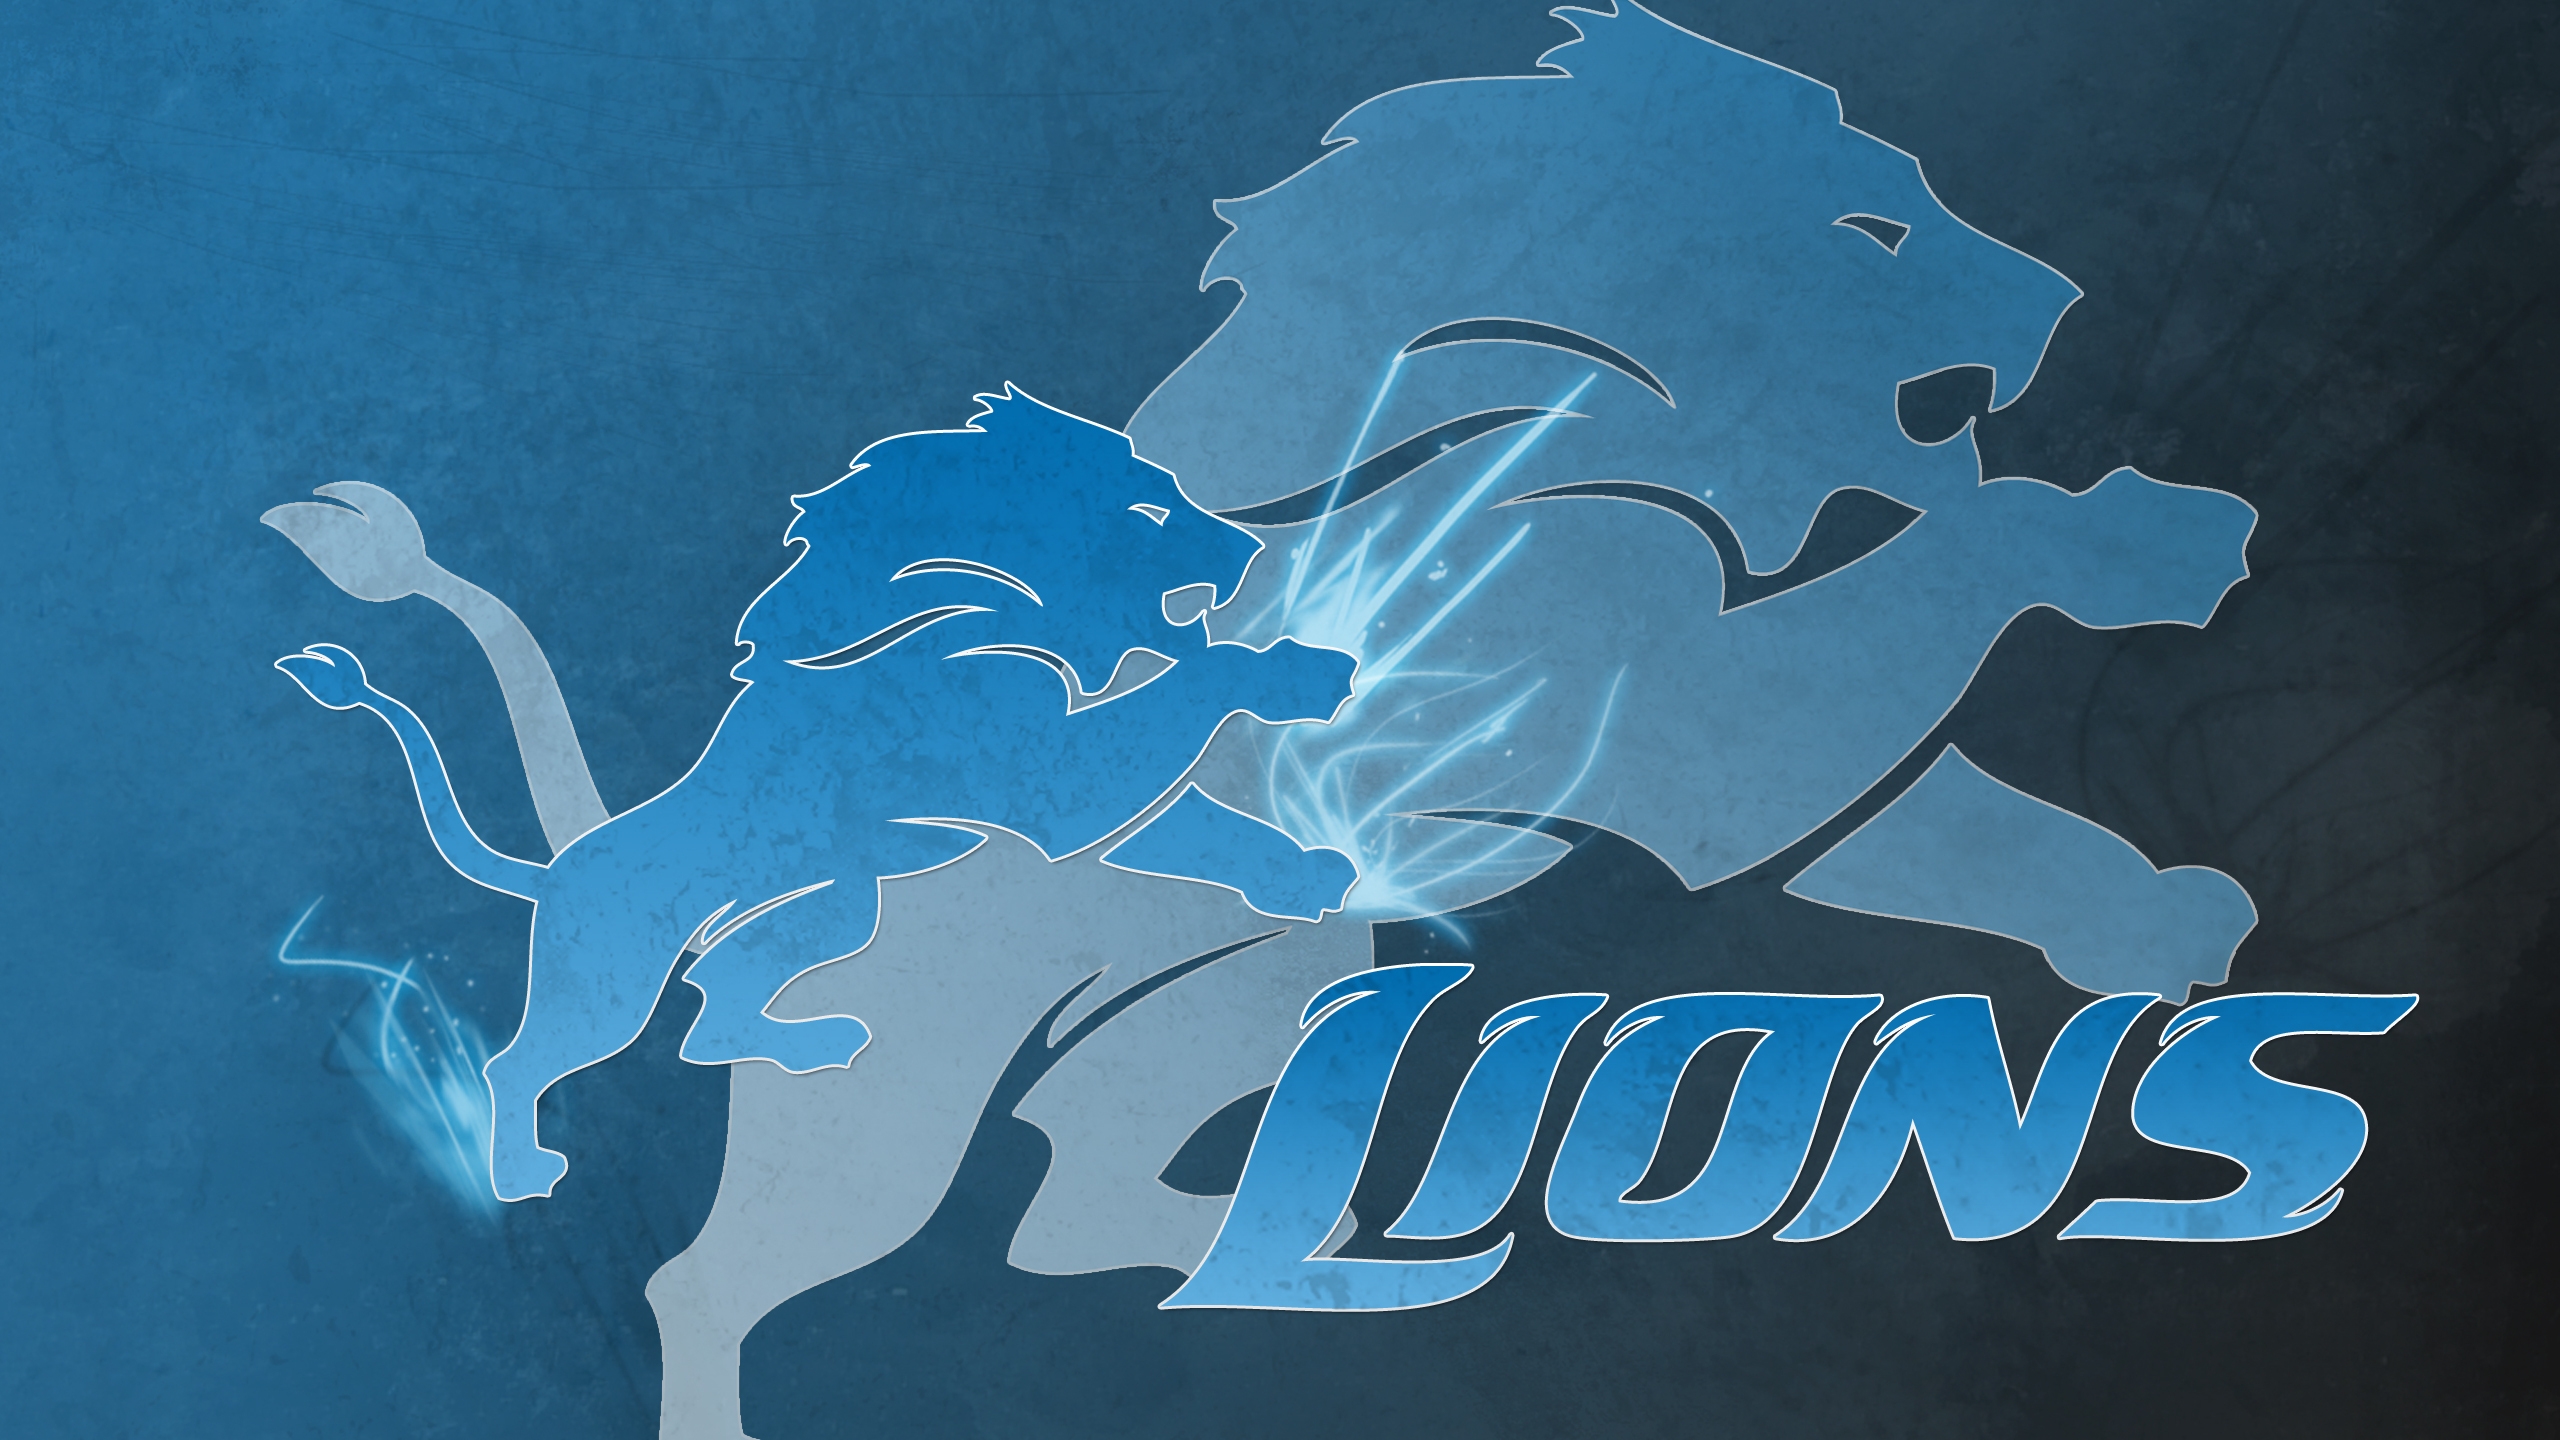 Detroit Lions Logo for 2560x1440 HDTV resolution